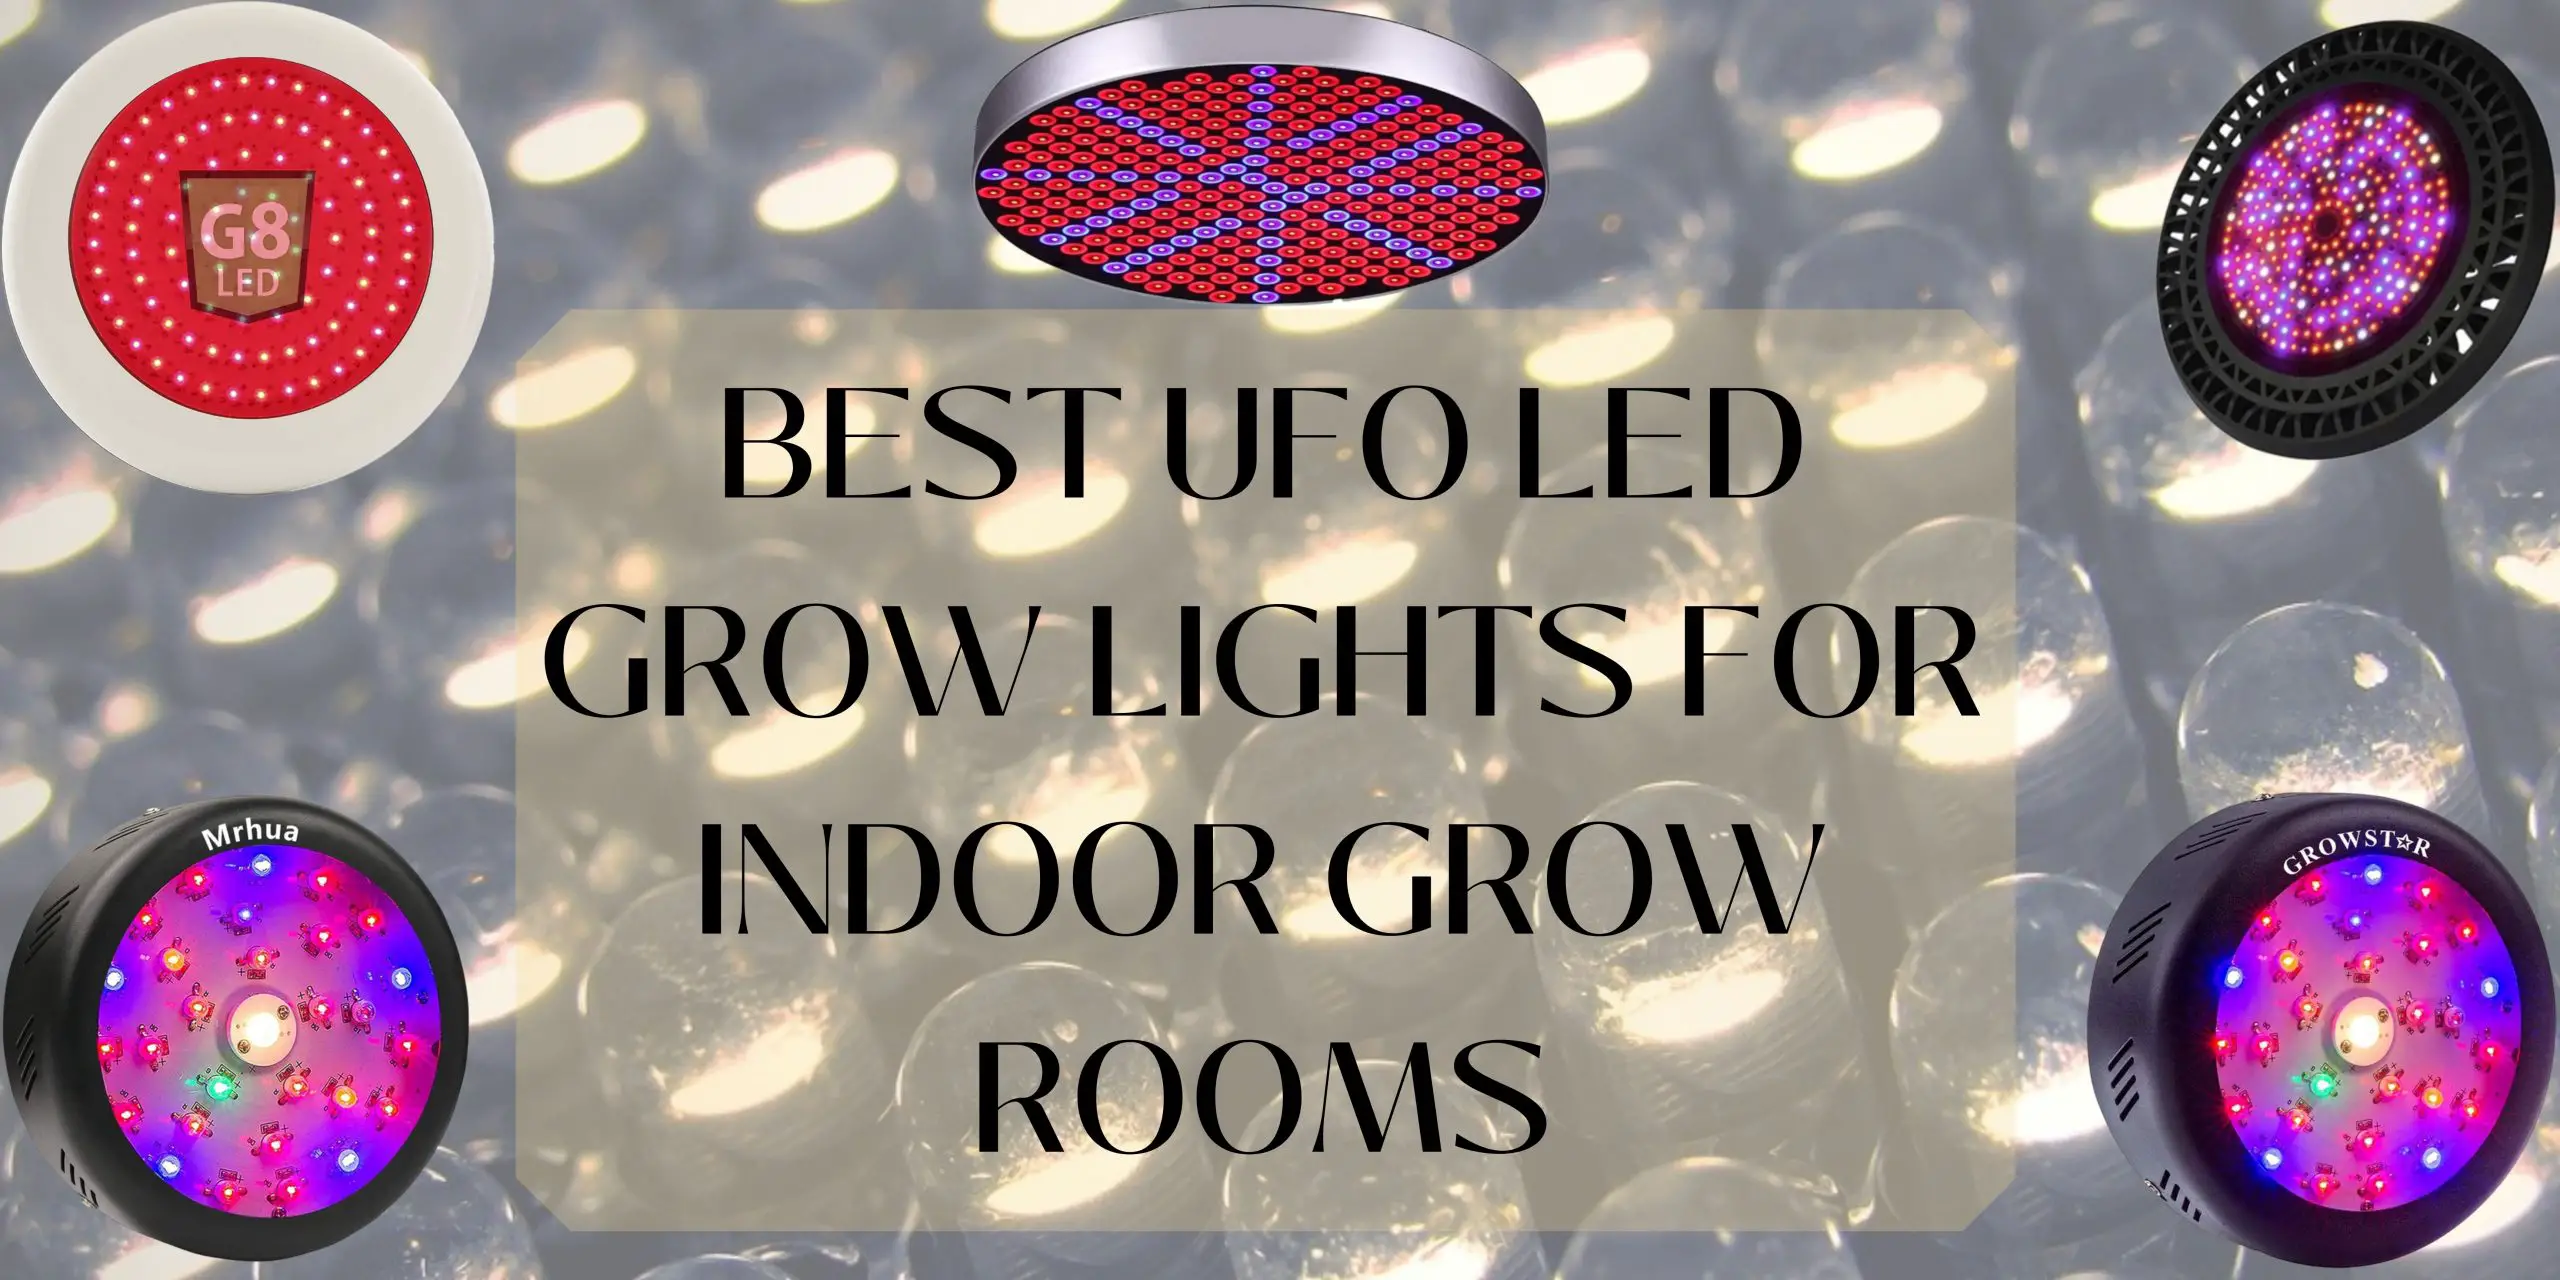 Best UFO LED Grow Lights